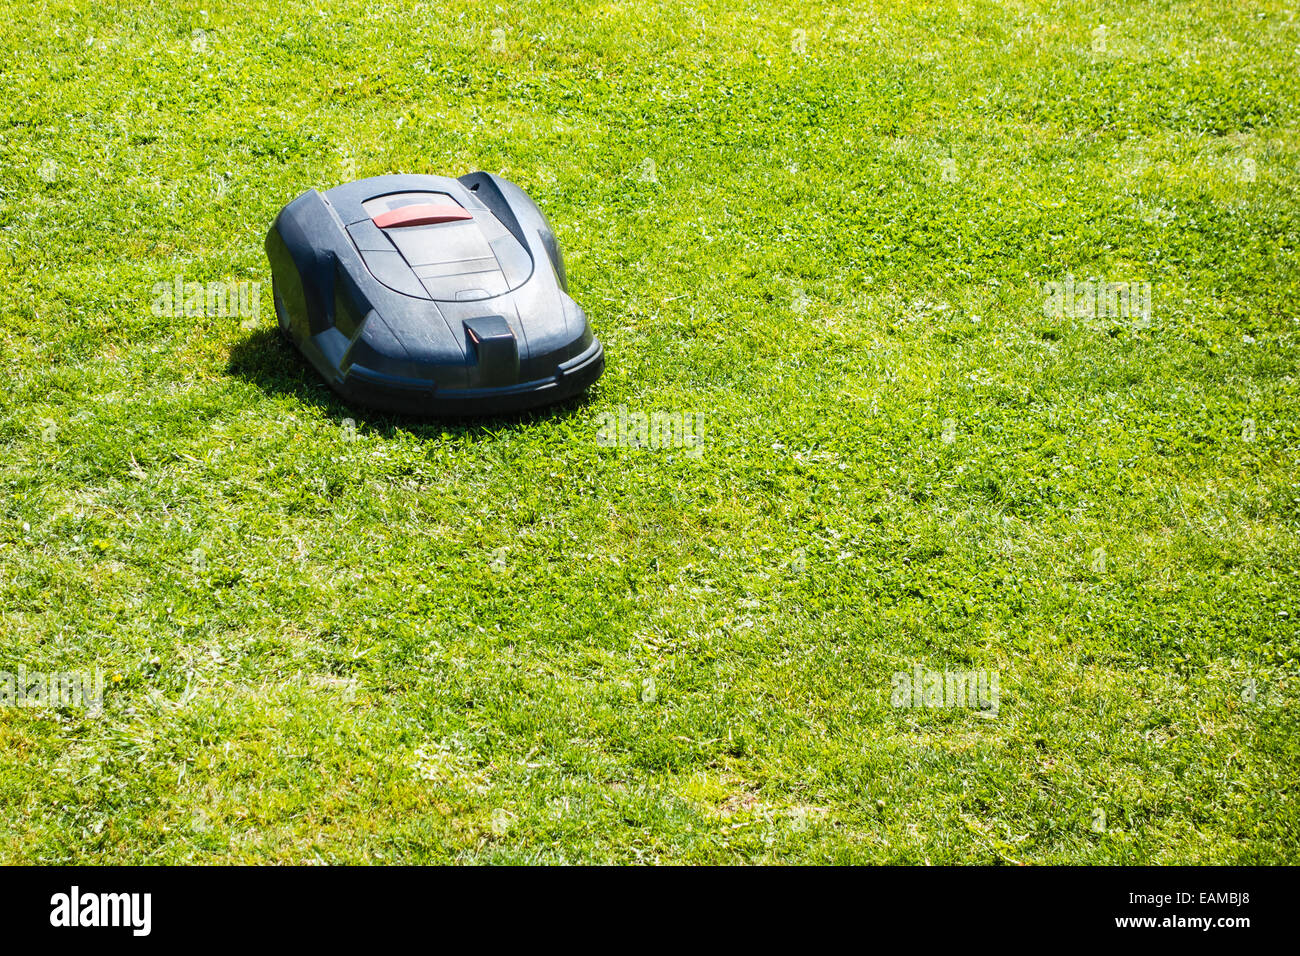 ein Roboter-Rasenmäher arbeiten auf einer grünen Wiese Stockfoto